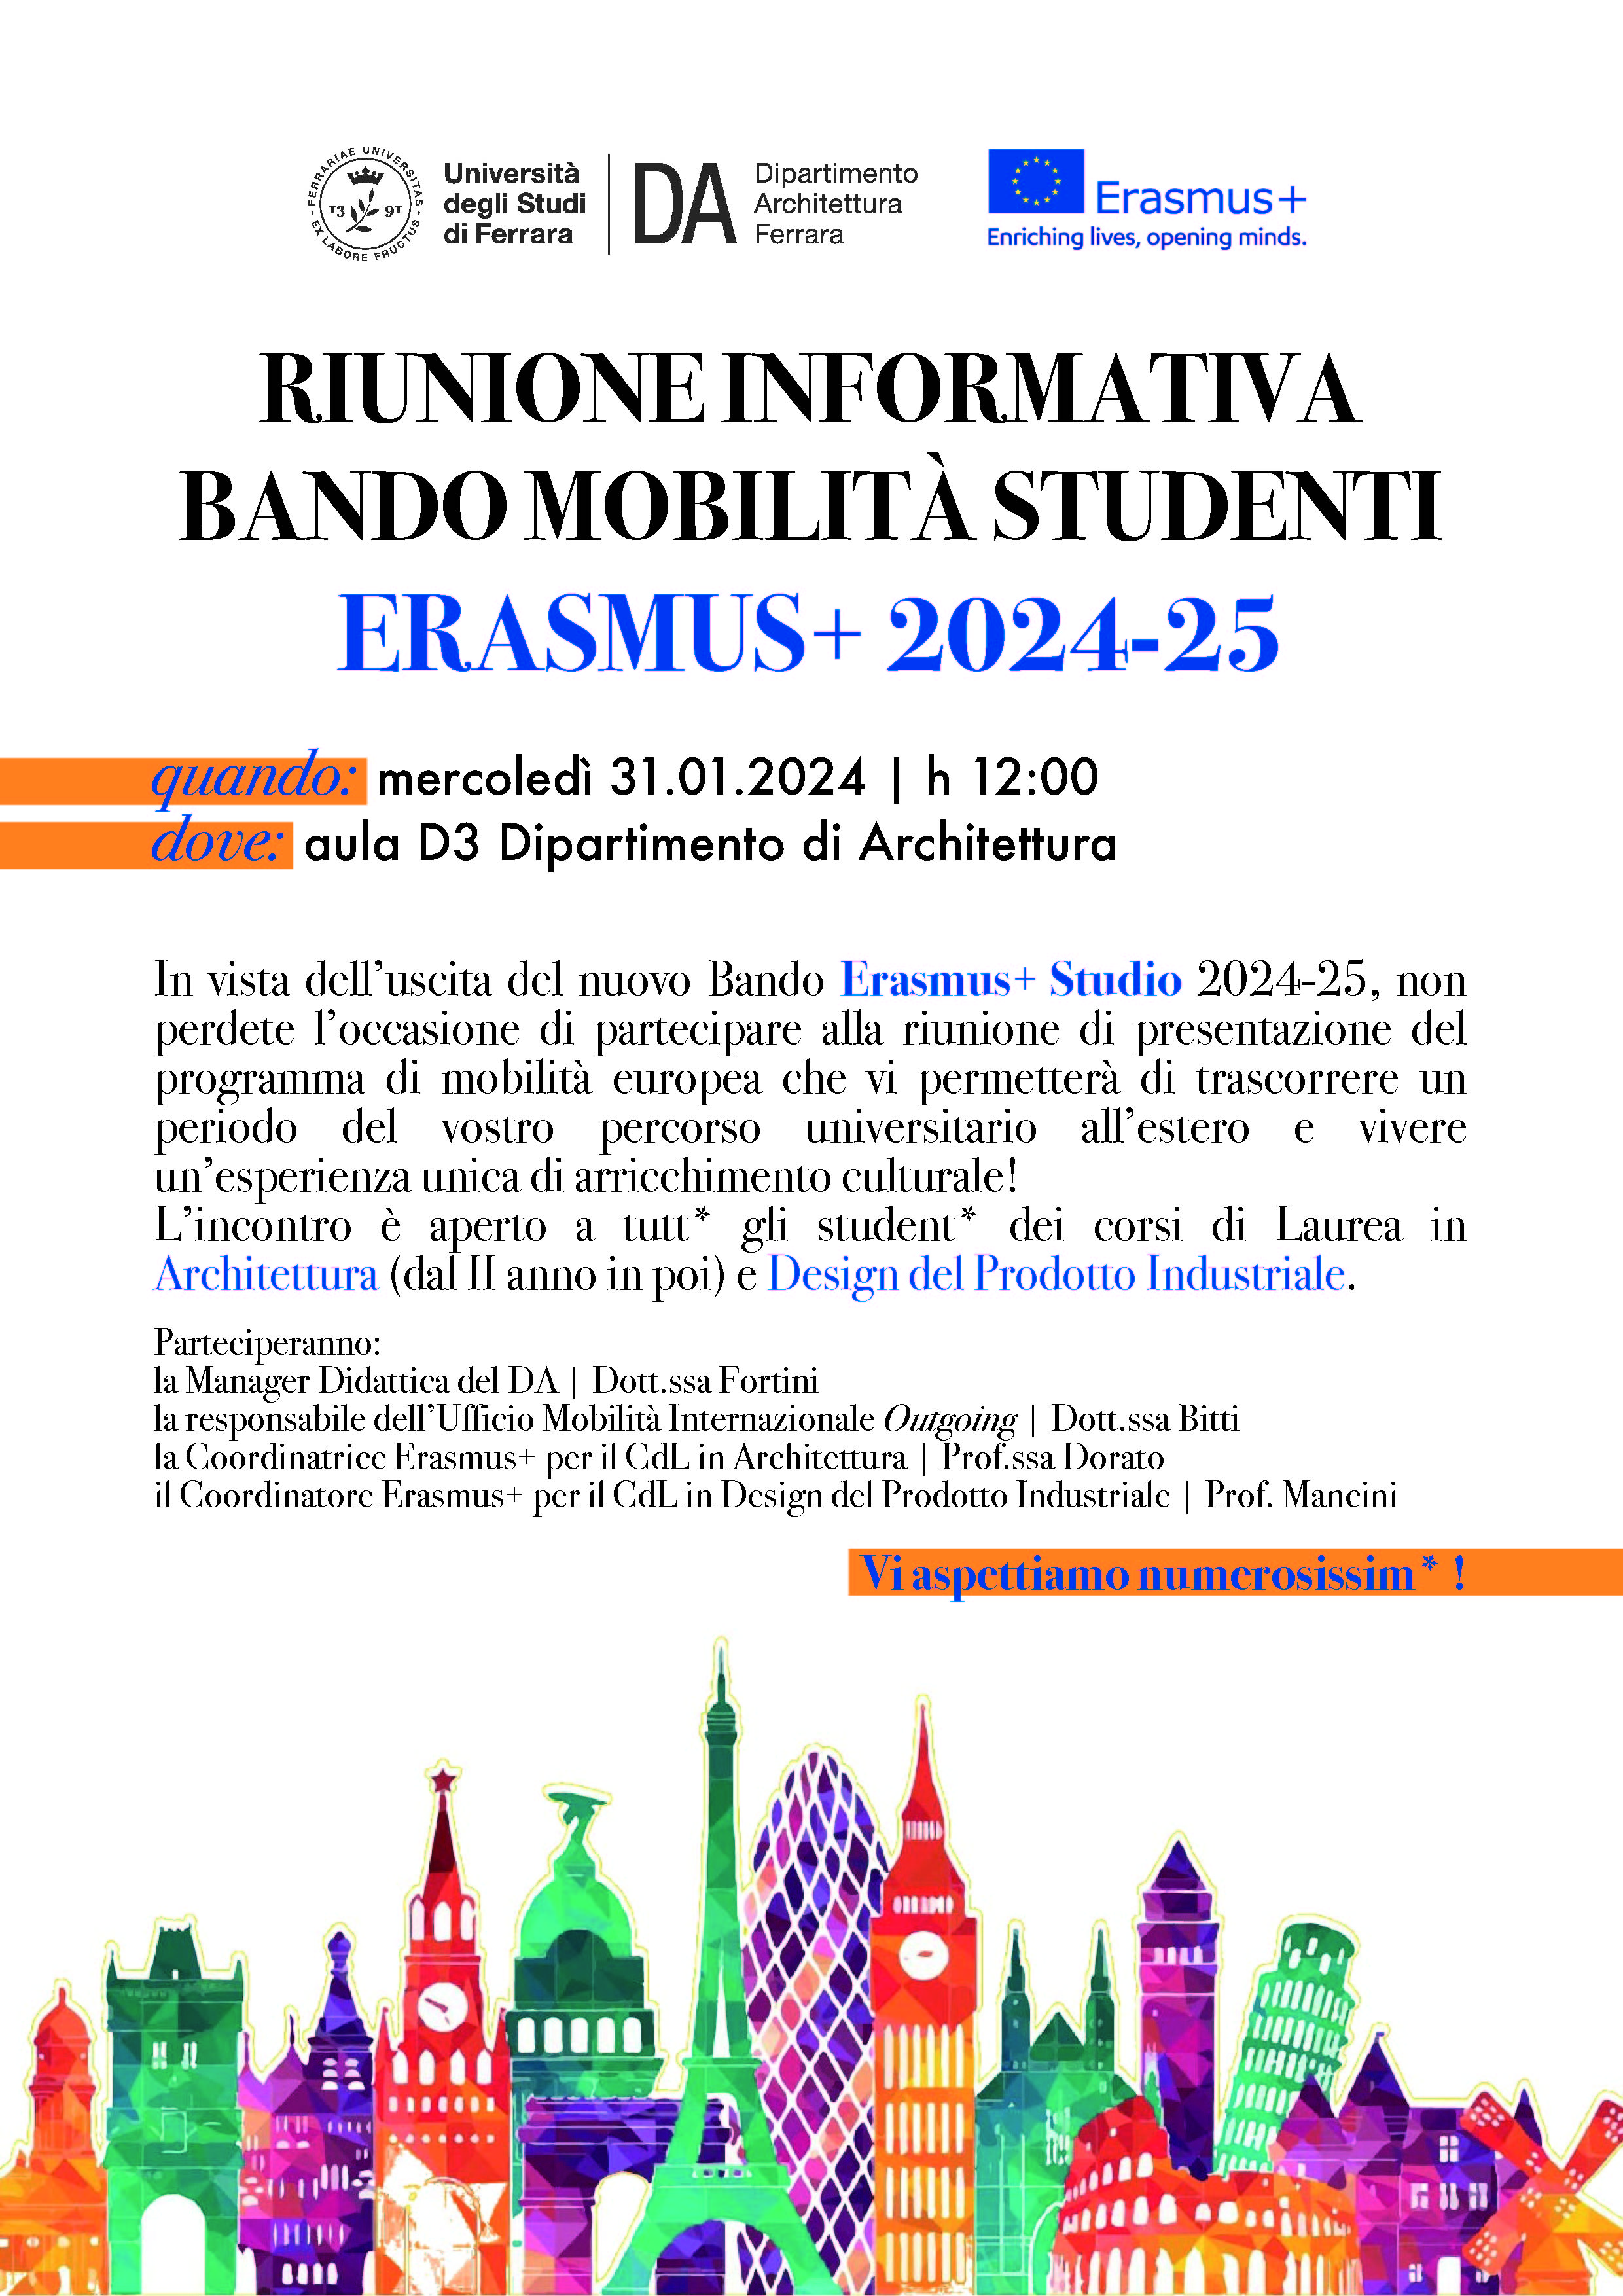 Locandina incontro orientamentoo Erasmus+Studio 2024-25